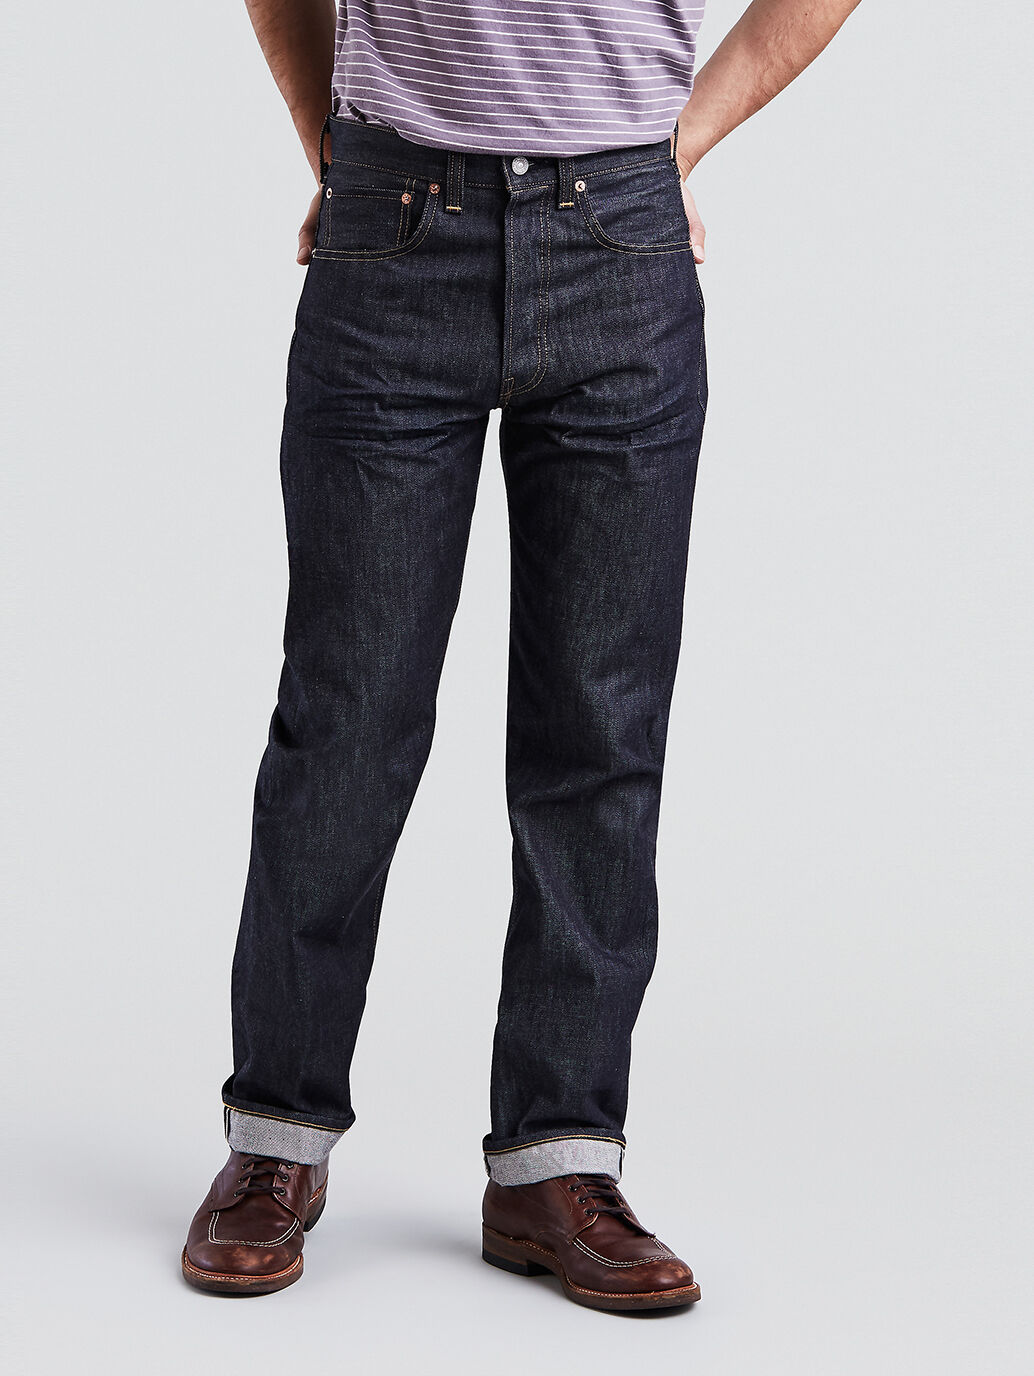 levis vintage 1947 jeans